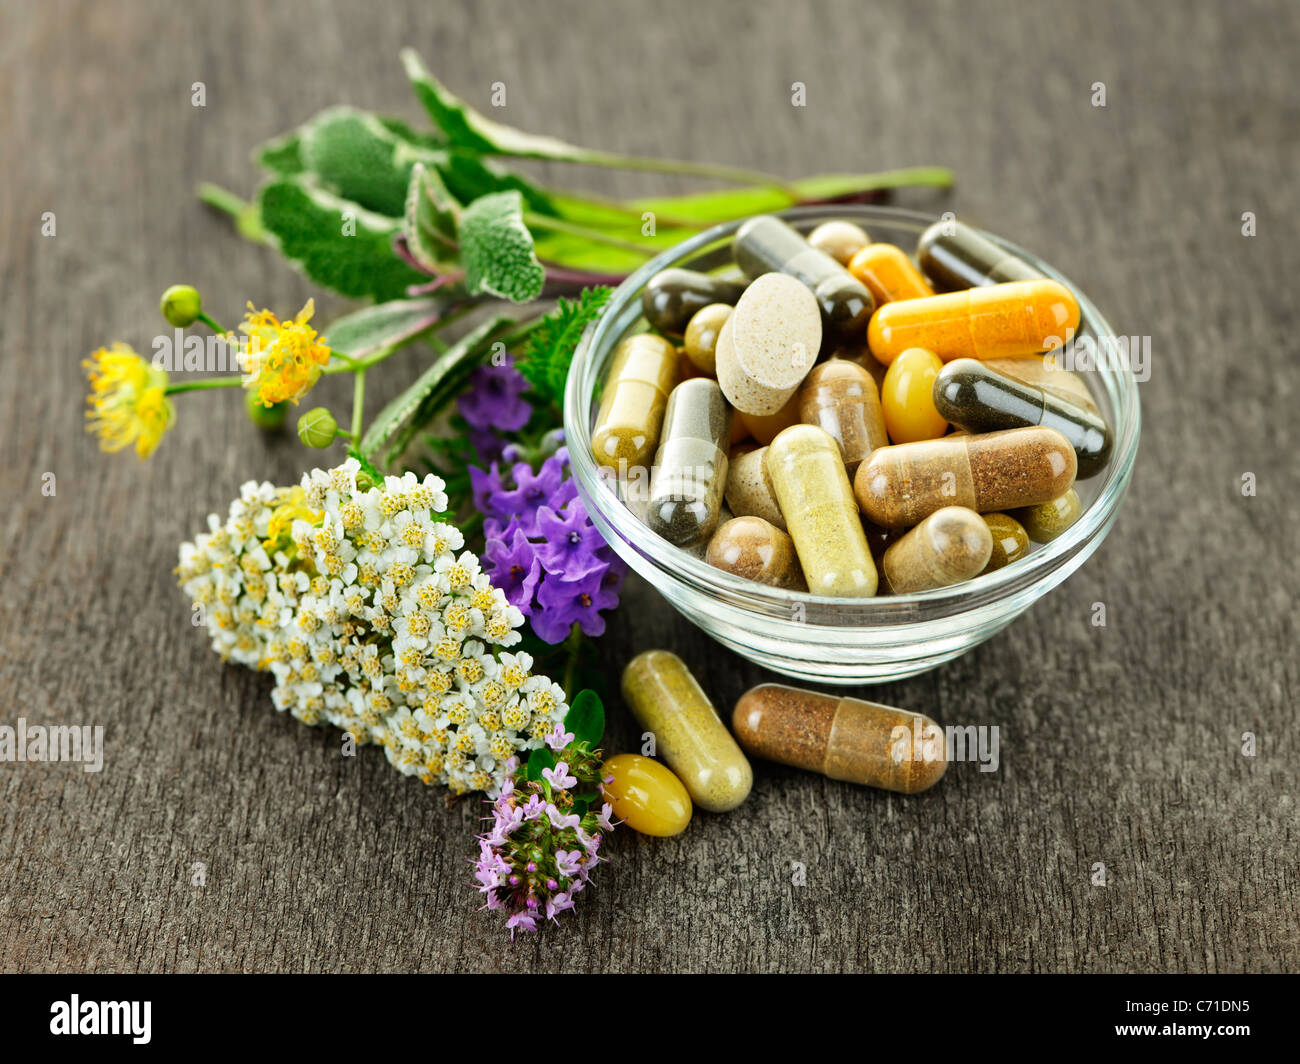 Le erbe aromatiche con la medicina alternativa i supplementi a base di erbe e pillole Foto Stock